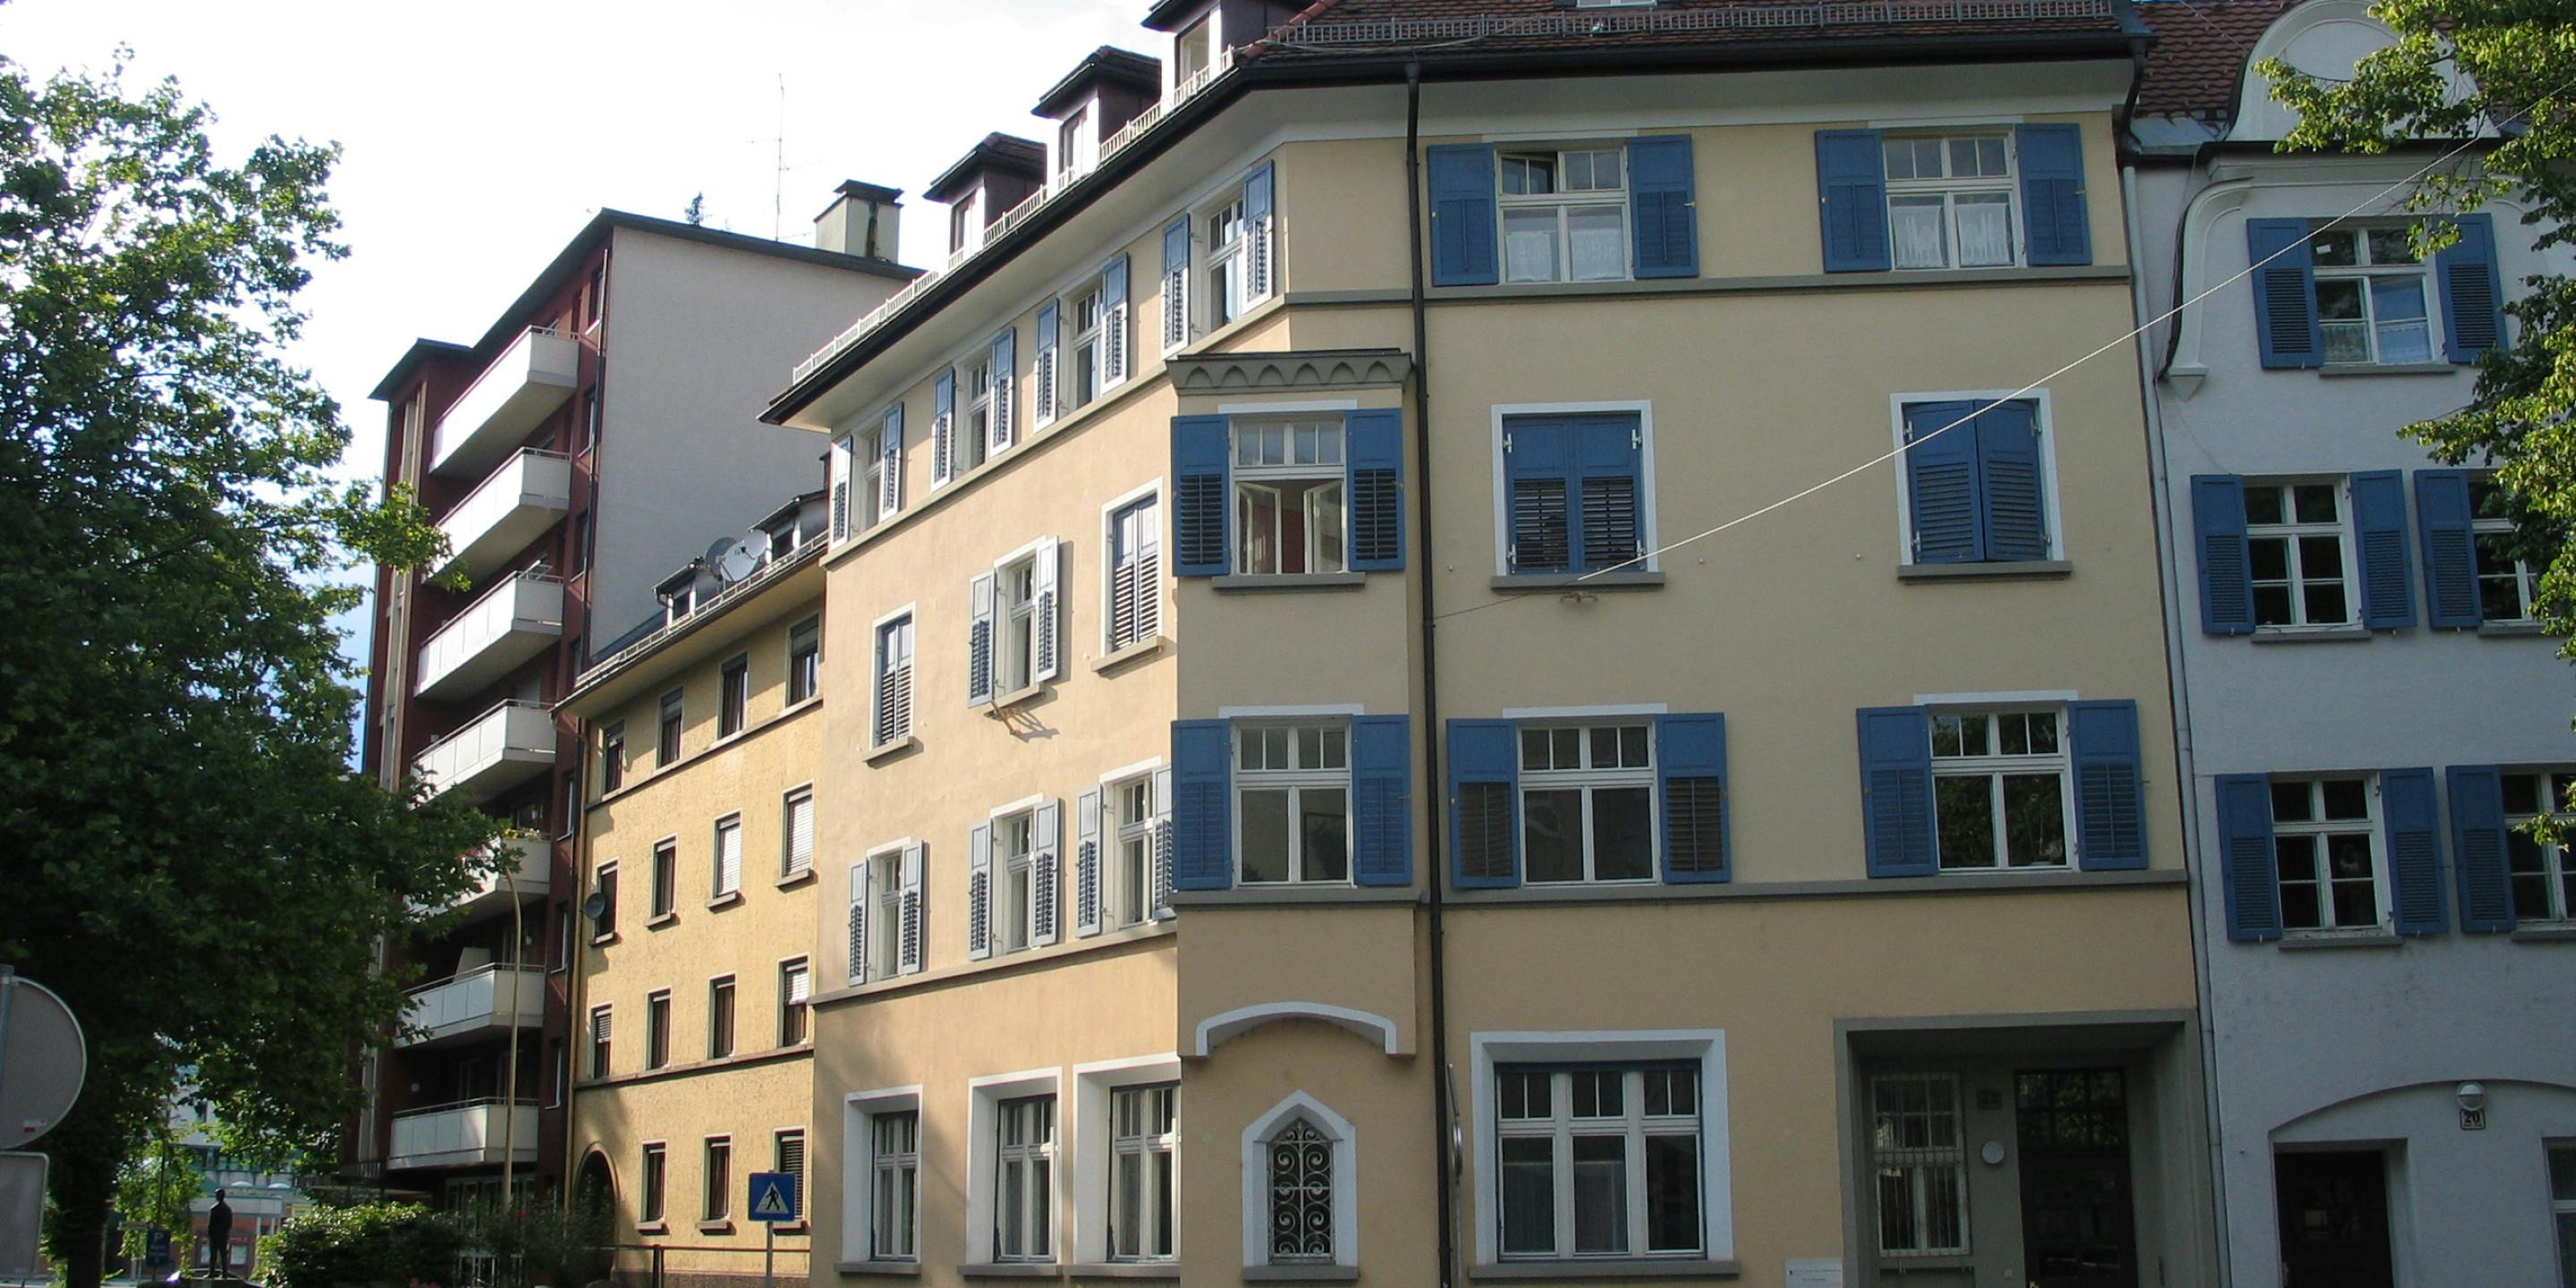 Wohngebäude Bregenz